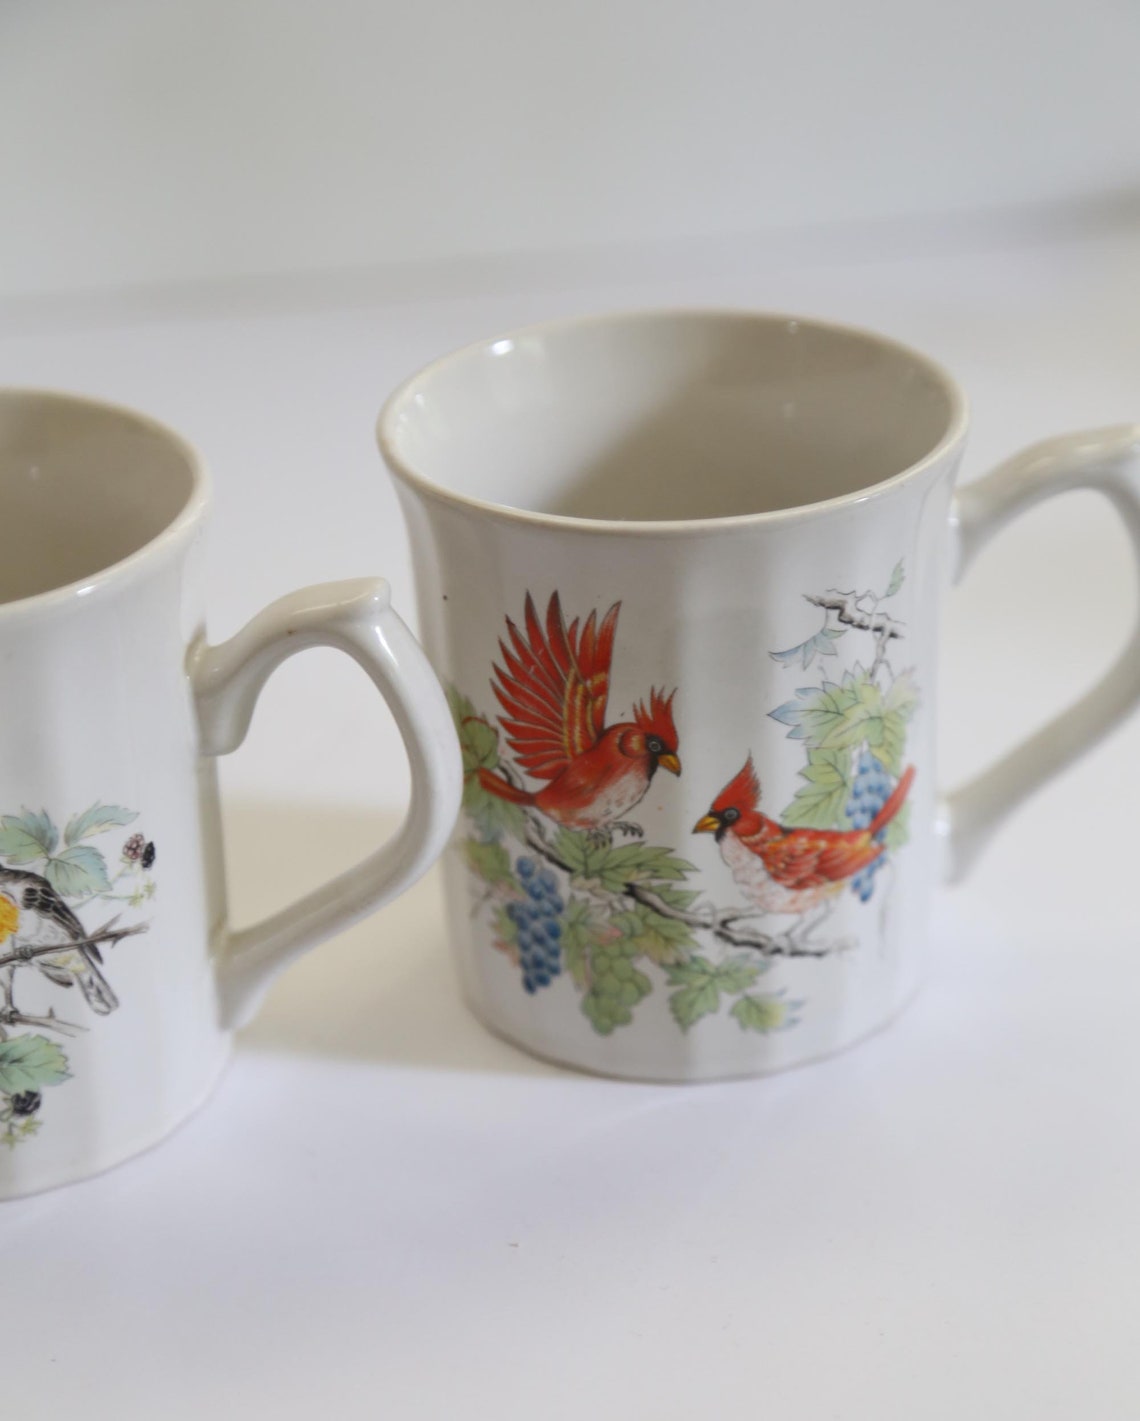 Vintage Bird Mugs Set of 2 White Mugs With Bird Motifs Tea | Etsy